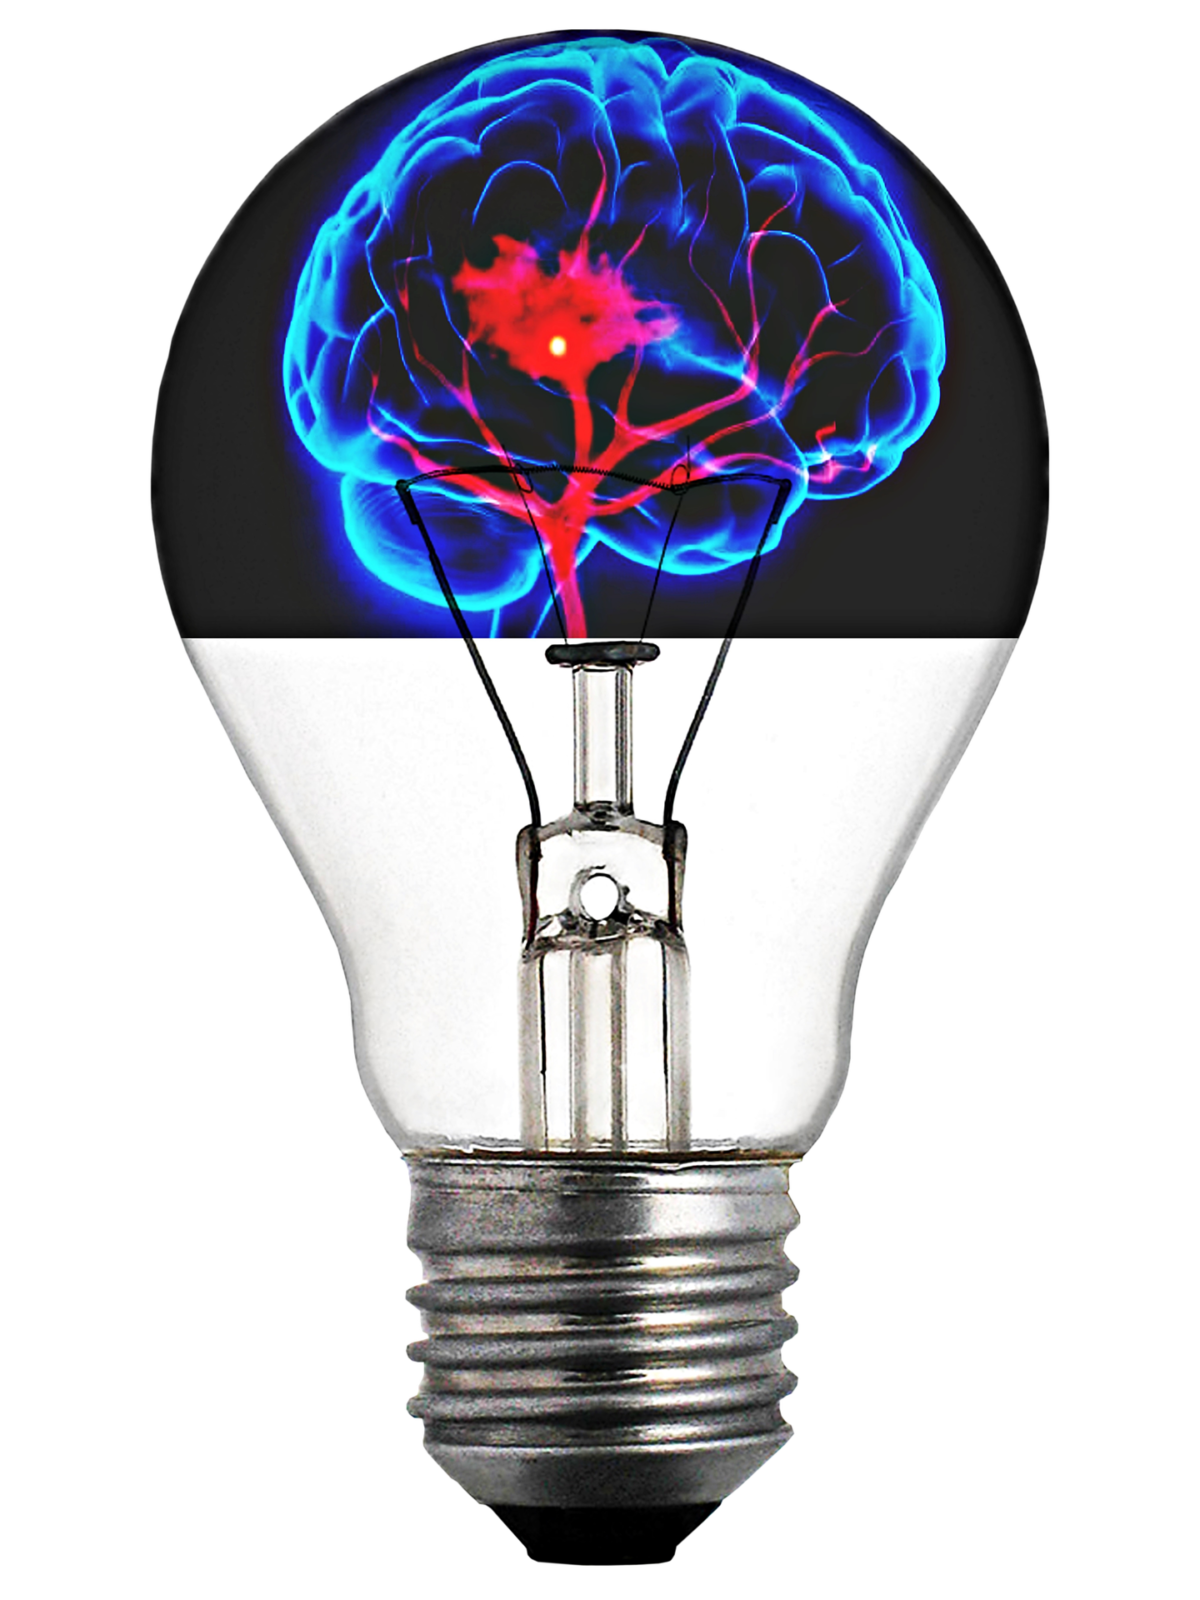 Handwerk, Beitragsbild https://meisterschreibstube.de/das-handwerk-hat-mehr-drauf/ Mit freundlicher Unterstützung von https://pixabay.com/illustrations/lightbulb-brain-light-up-throughts-1599359/